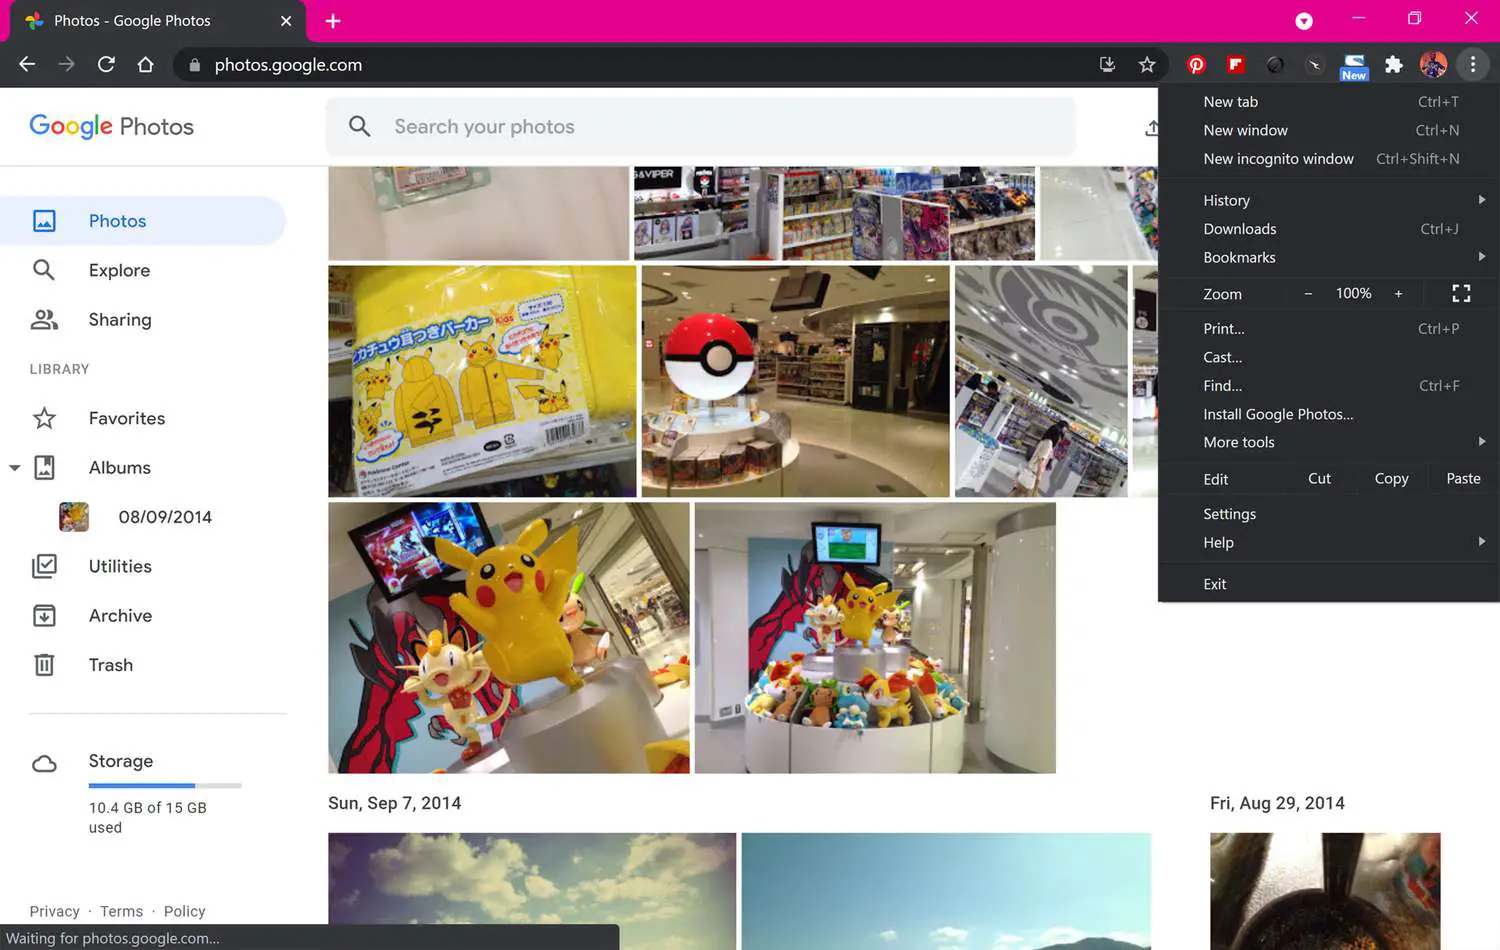 Site do Google Fotos no navegador Google Chrome com a opção Chromecast exibida no menu.